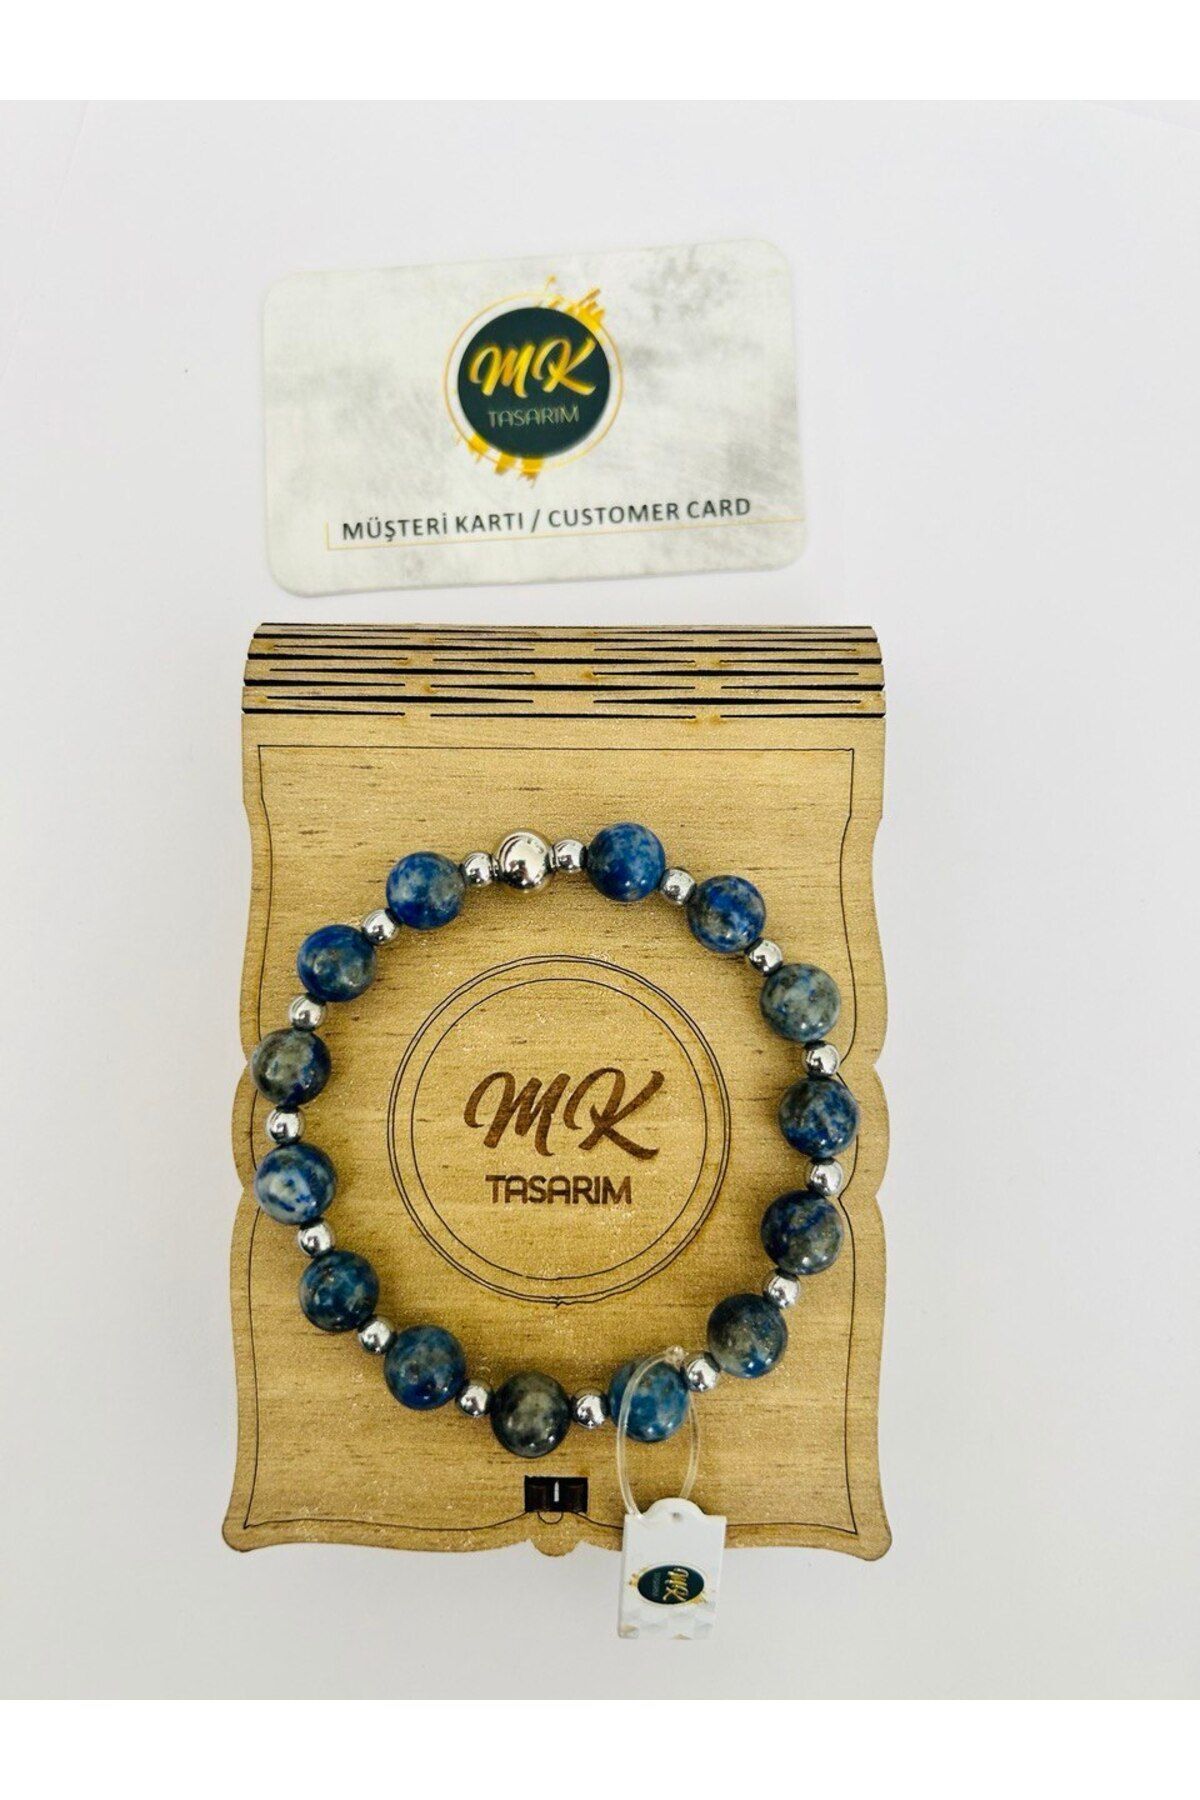 MK tasarım Gerçek Lapis Lazuli Taşı Bileklik (ARA TAŞLAR GERÇEK HEMATİT TAŞIDIR) Mk.020.016